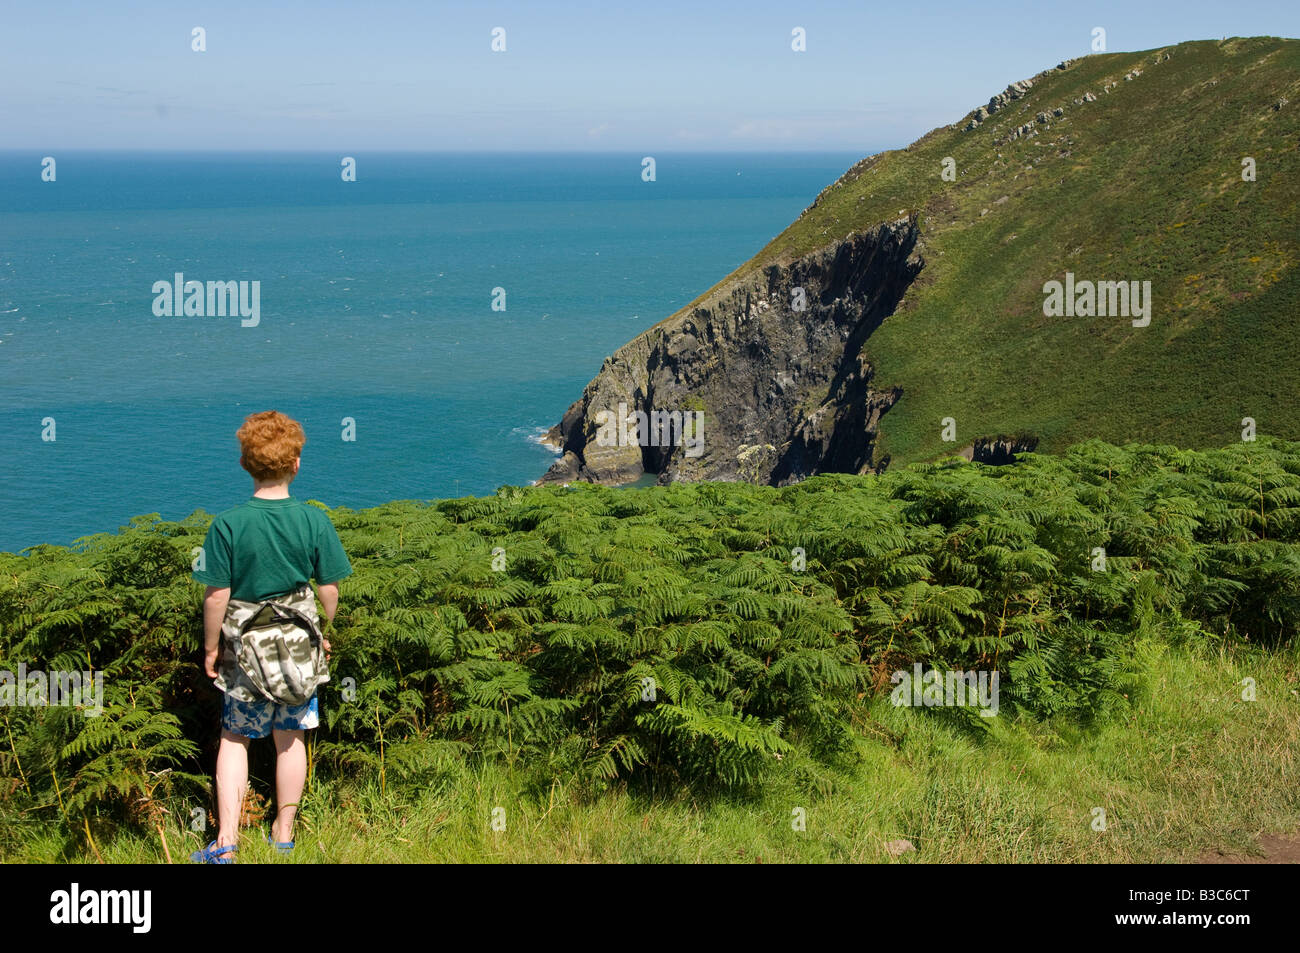 Royaume-uni, Pays de Galles, Pembrokeshire. Un jeune garçon regarde à partir de la Dinas tête sur une promenade le long du sentier côtier du Pembrokeshire (MR). Banque D'Images